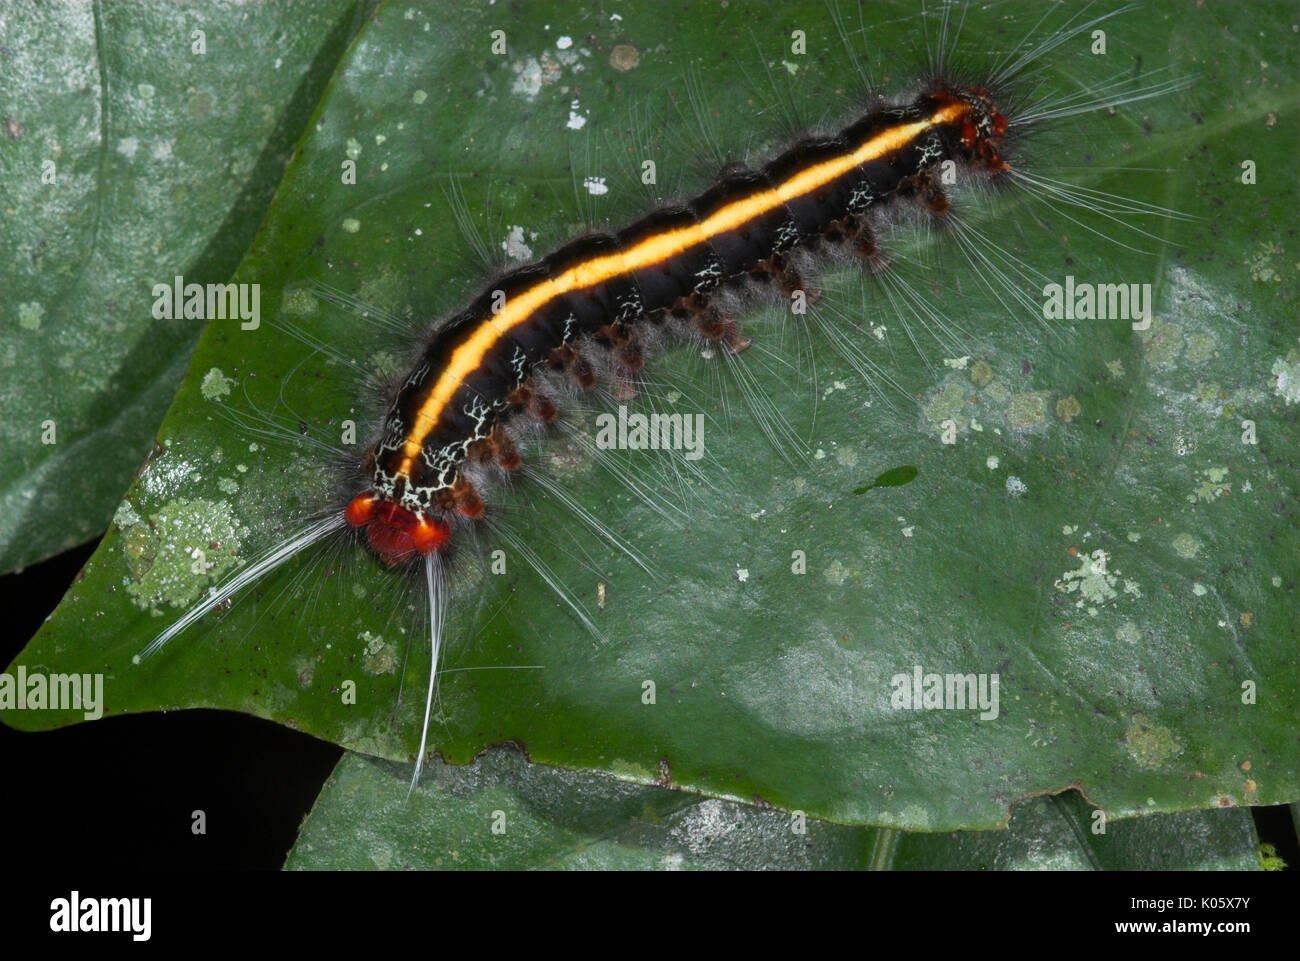 Caterpillar, Arten unbekannt, auf Blatt mit urticating Haare, Manu, Peru, Amazonas Dschungel, lepidopterism, rot mit gelben Streifen und schwarzer Körper. Stockfoto